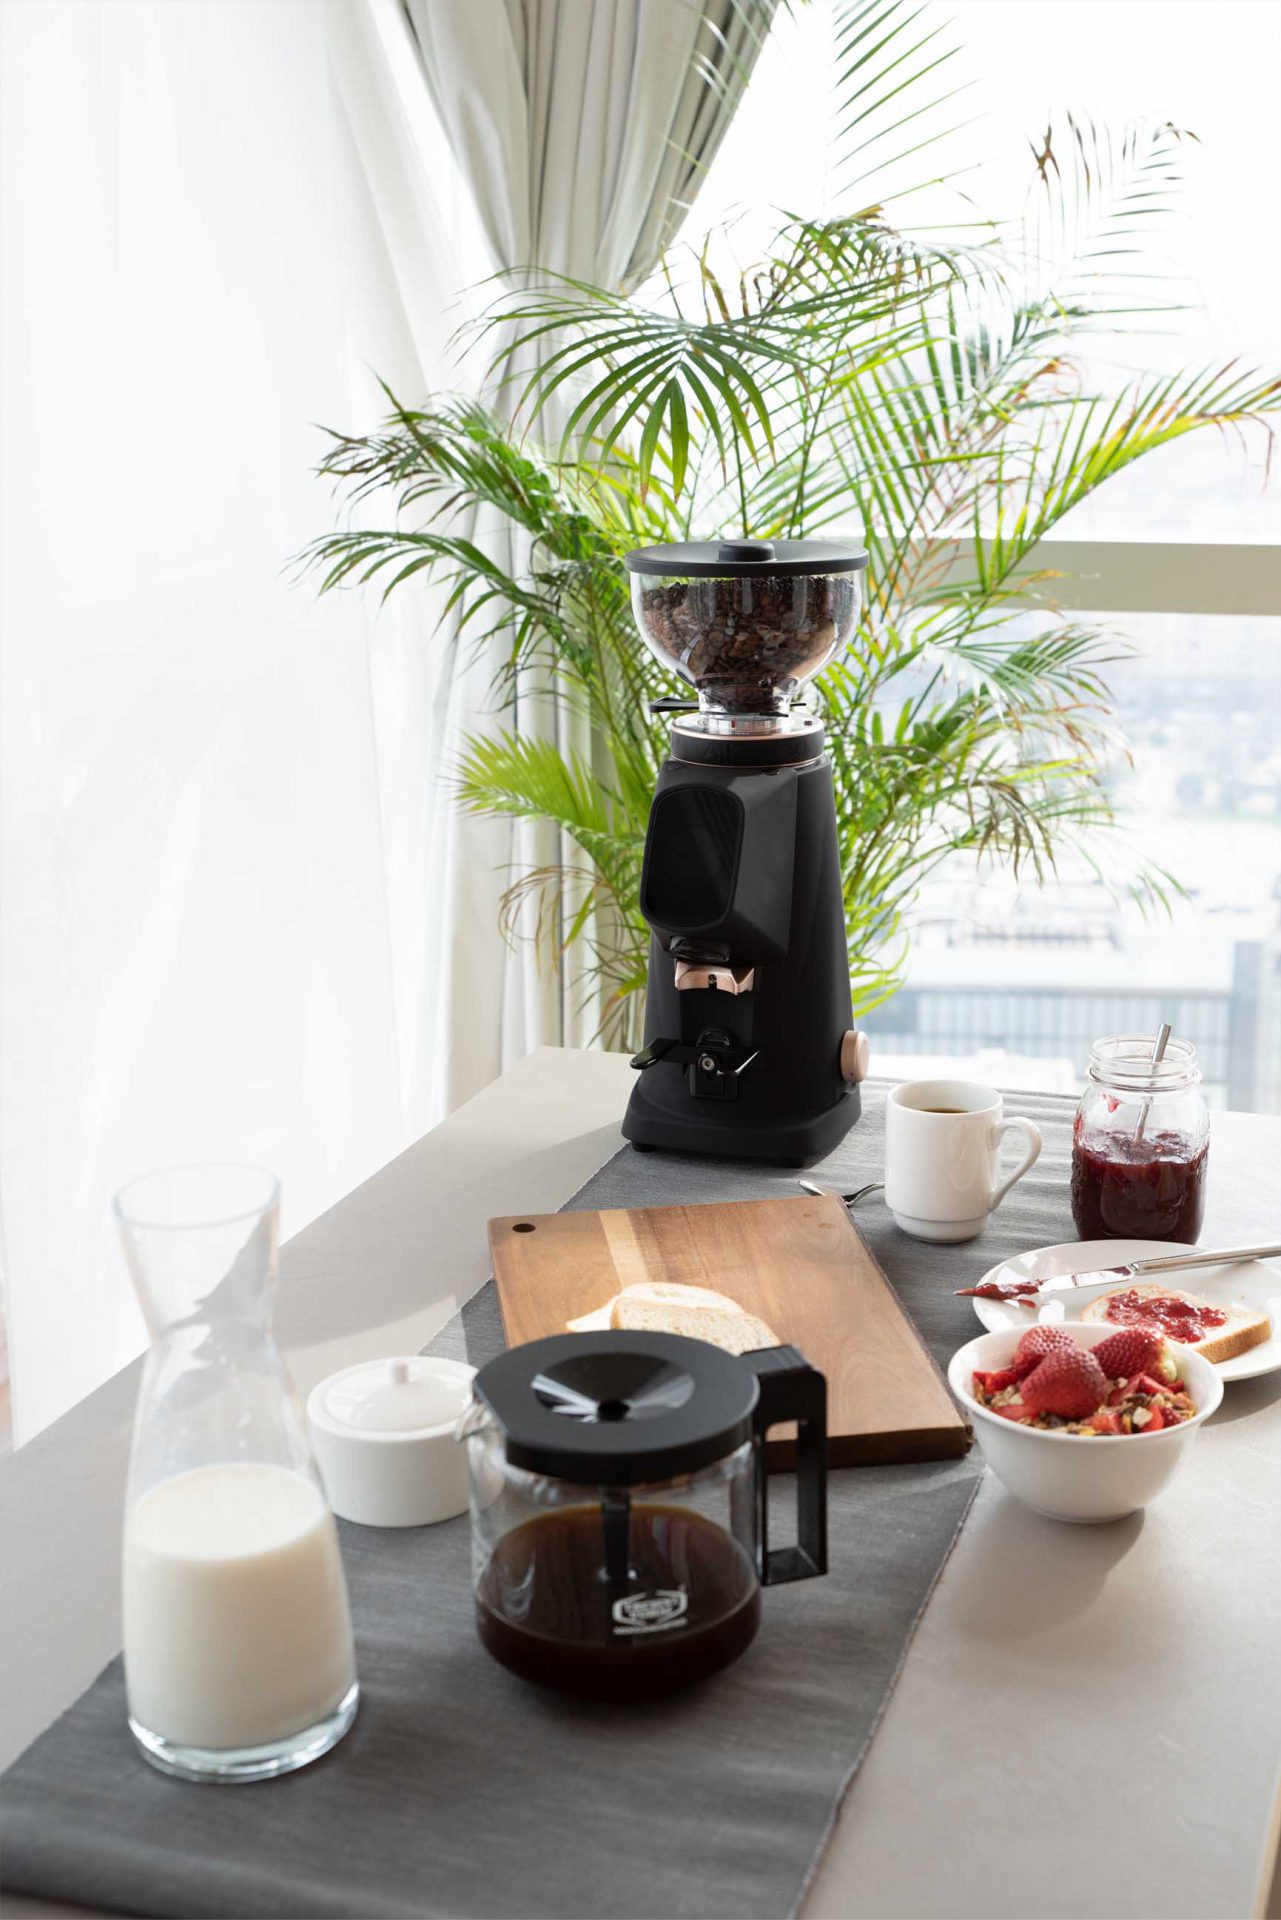 Fiorenzato AllGround - coffee grinder